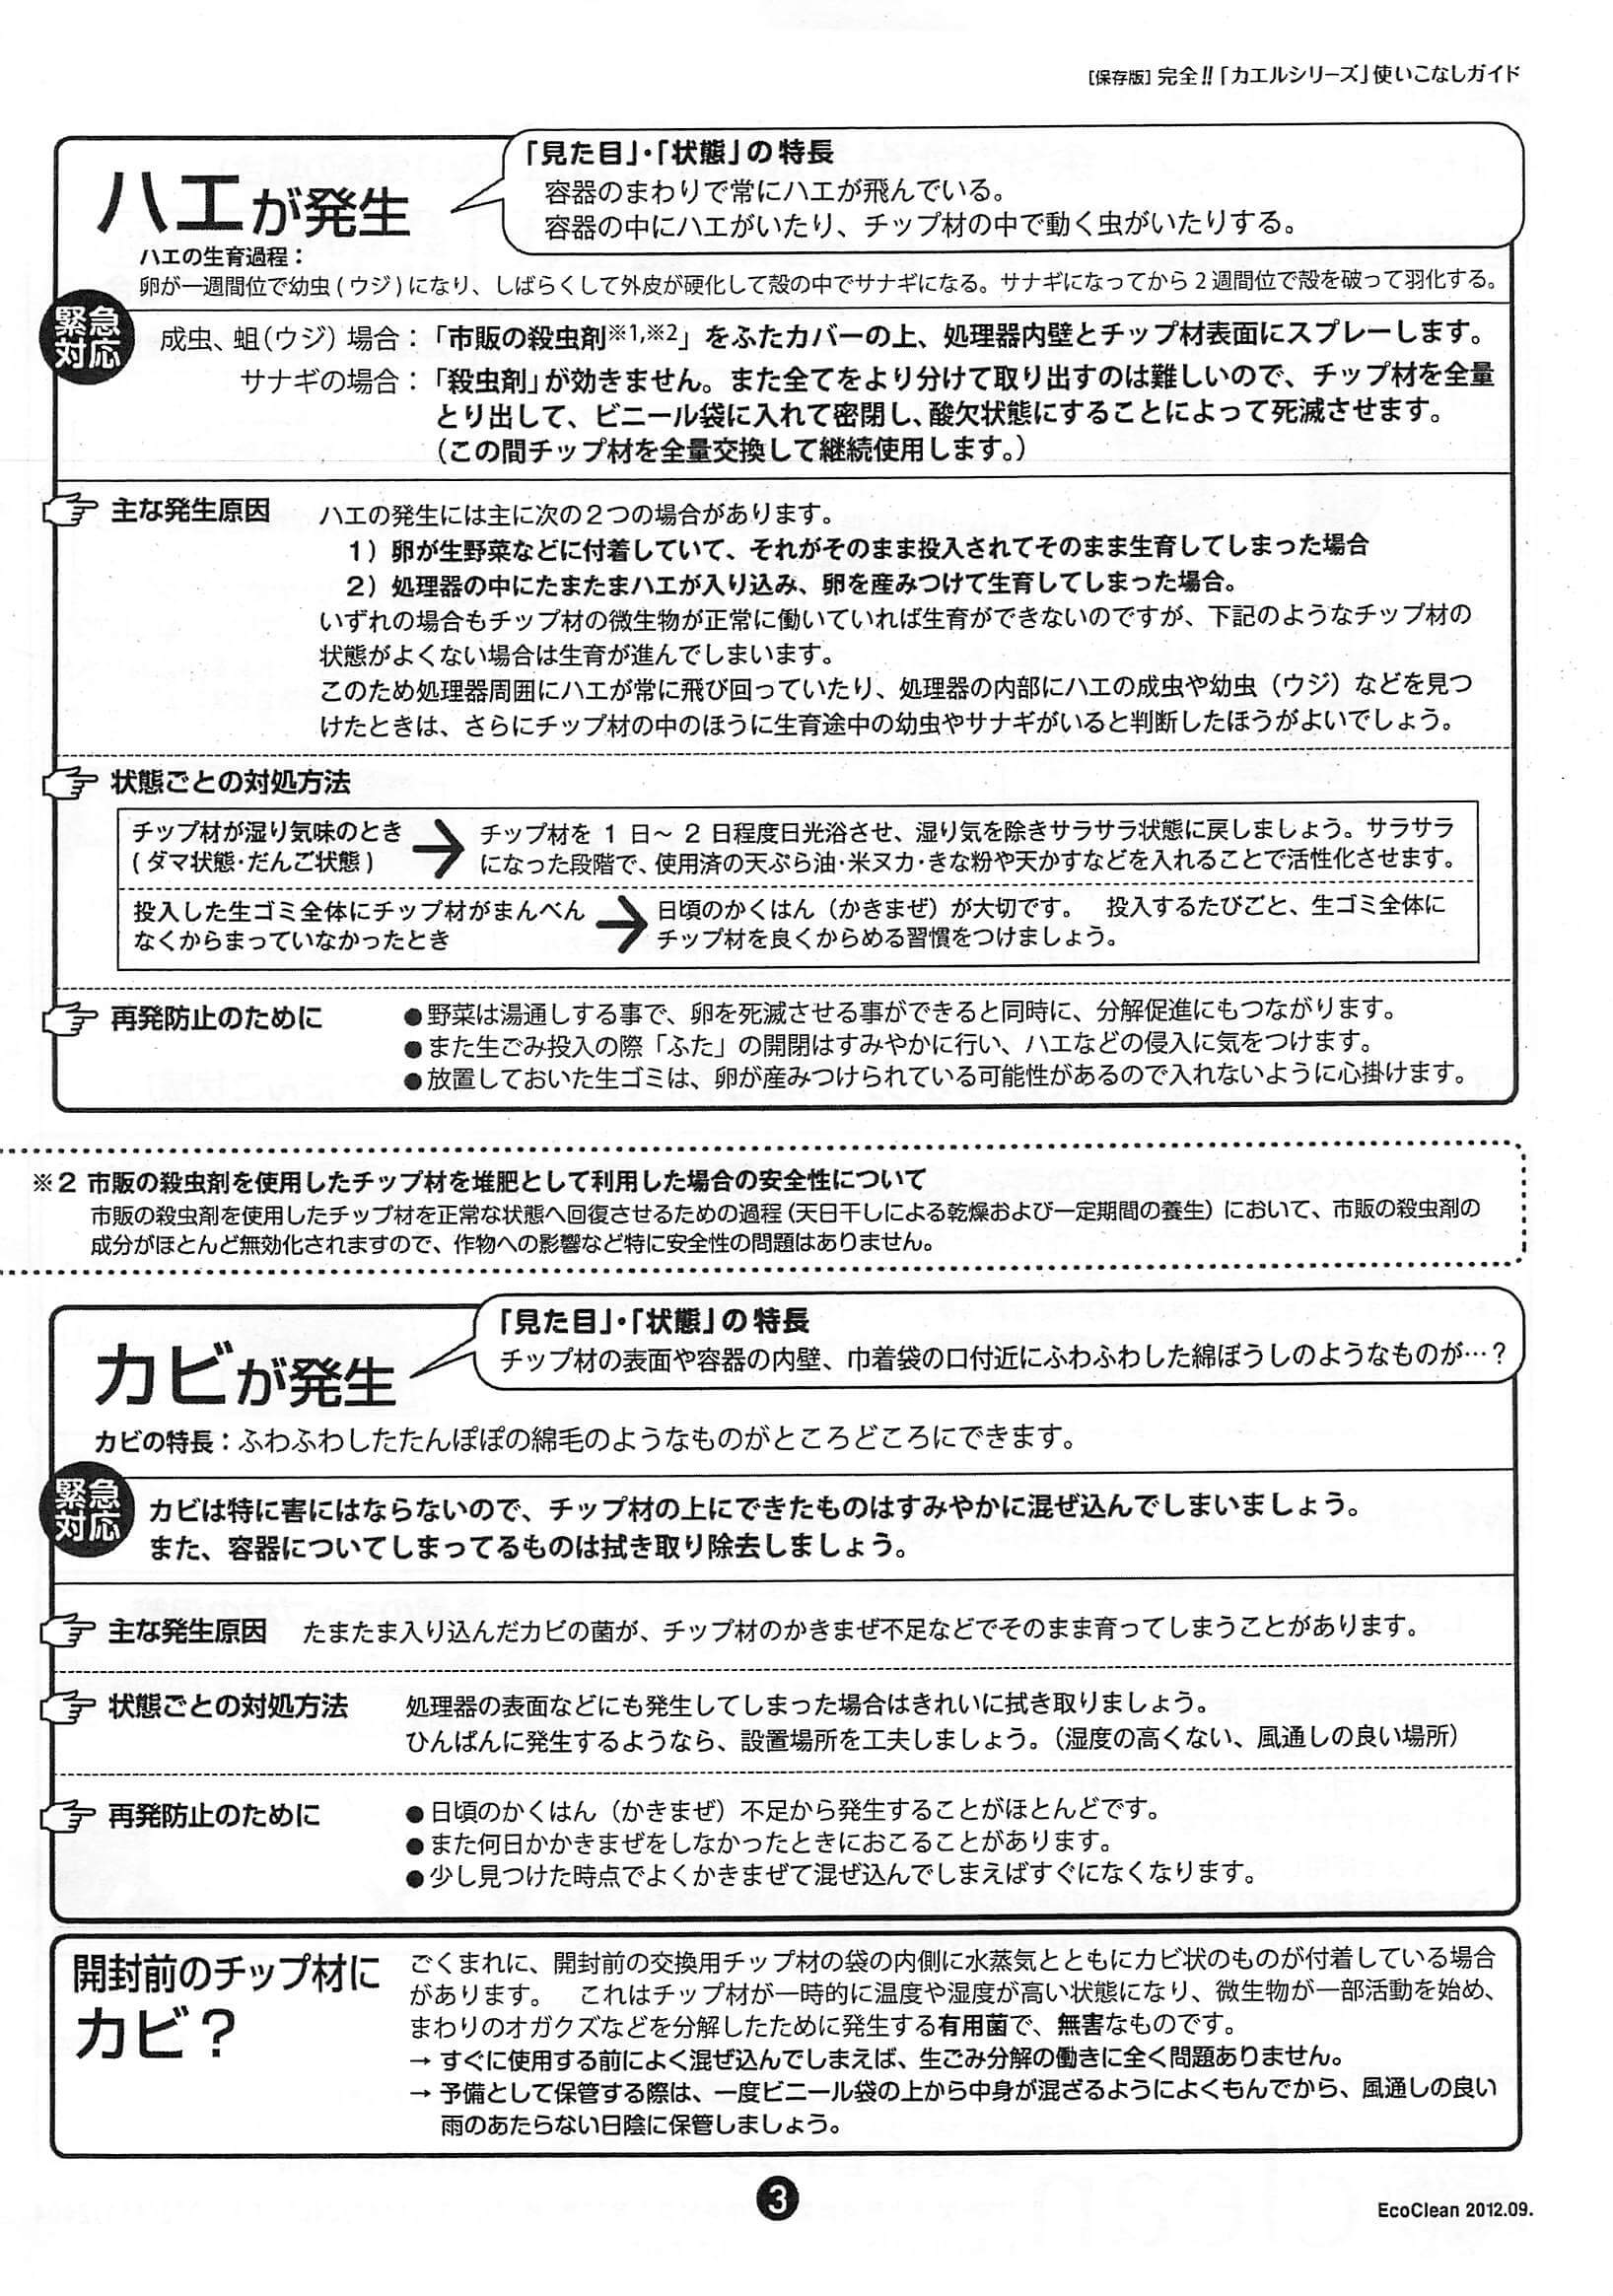 【取扱説明書】家庭用コンポスト (自然にカエルS SKS-101)